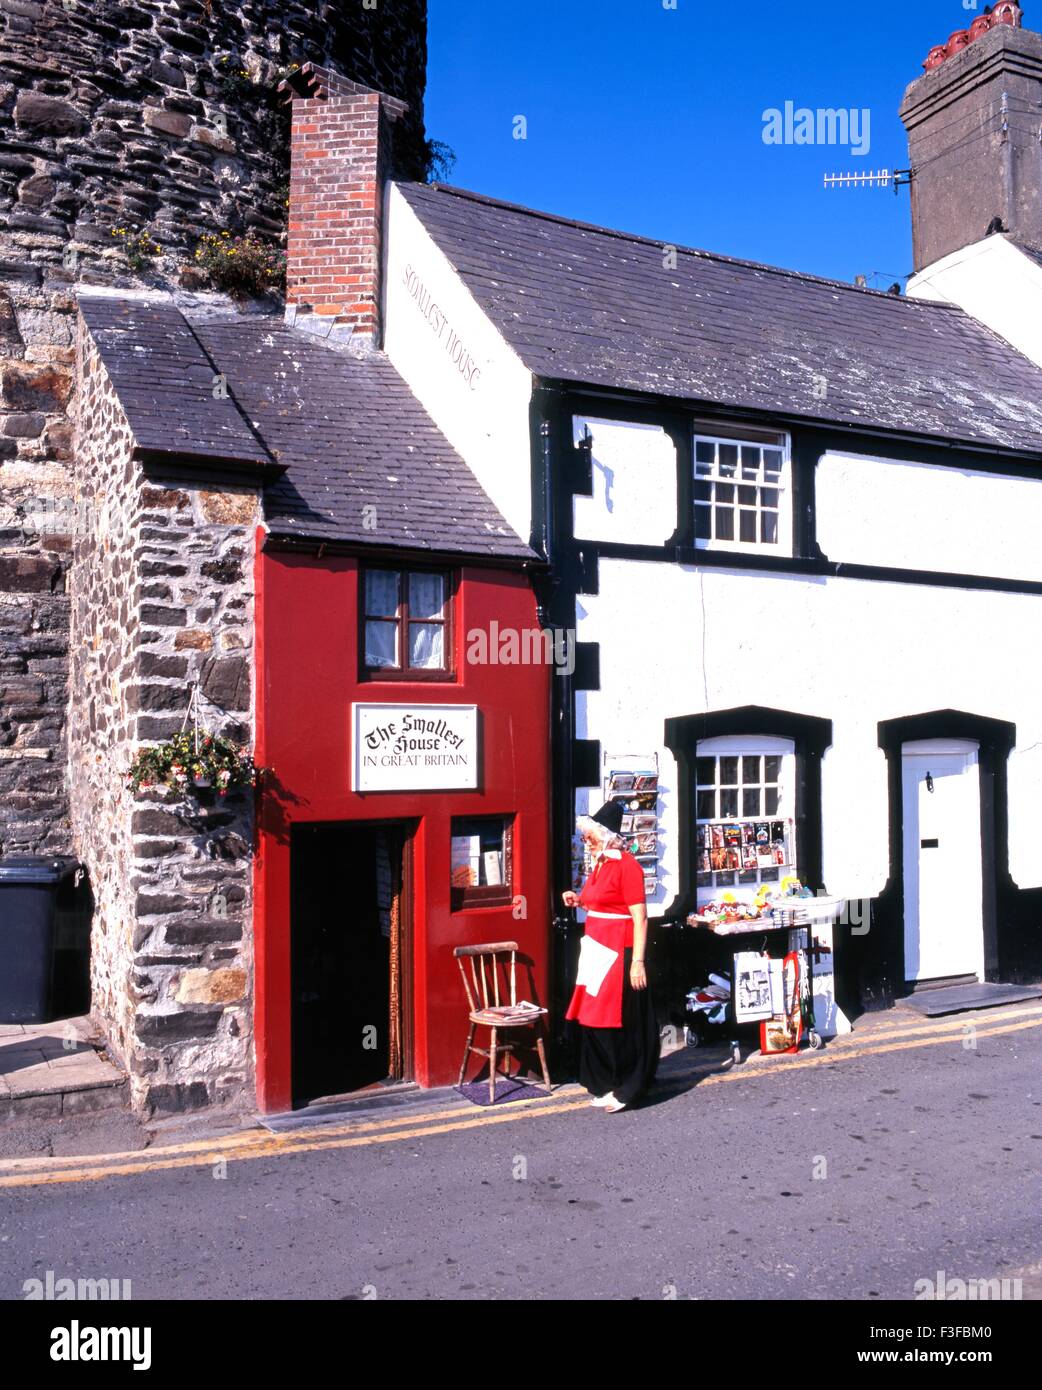 La plus petite maison en Grande-Bretagne avec une dame en costume traditionnel à l'avant-plan, Conwy (Conway), Gwynedd, Pays de Galles. Banque D'Images